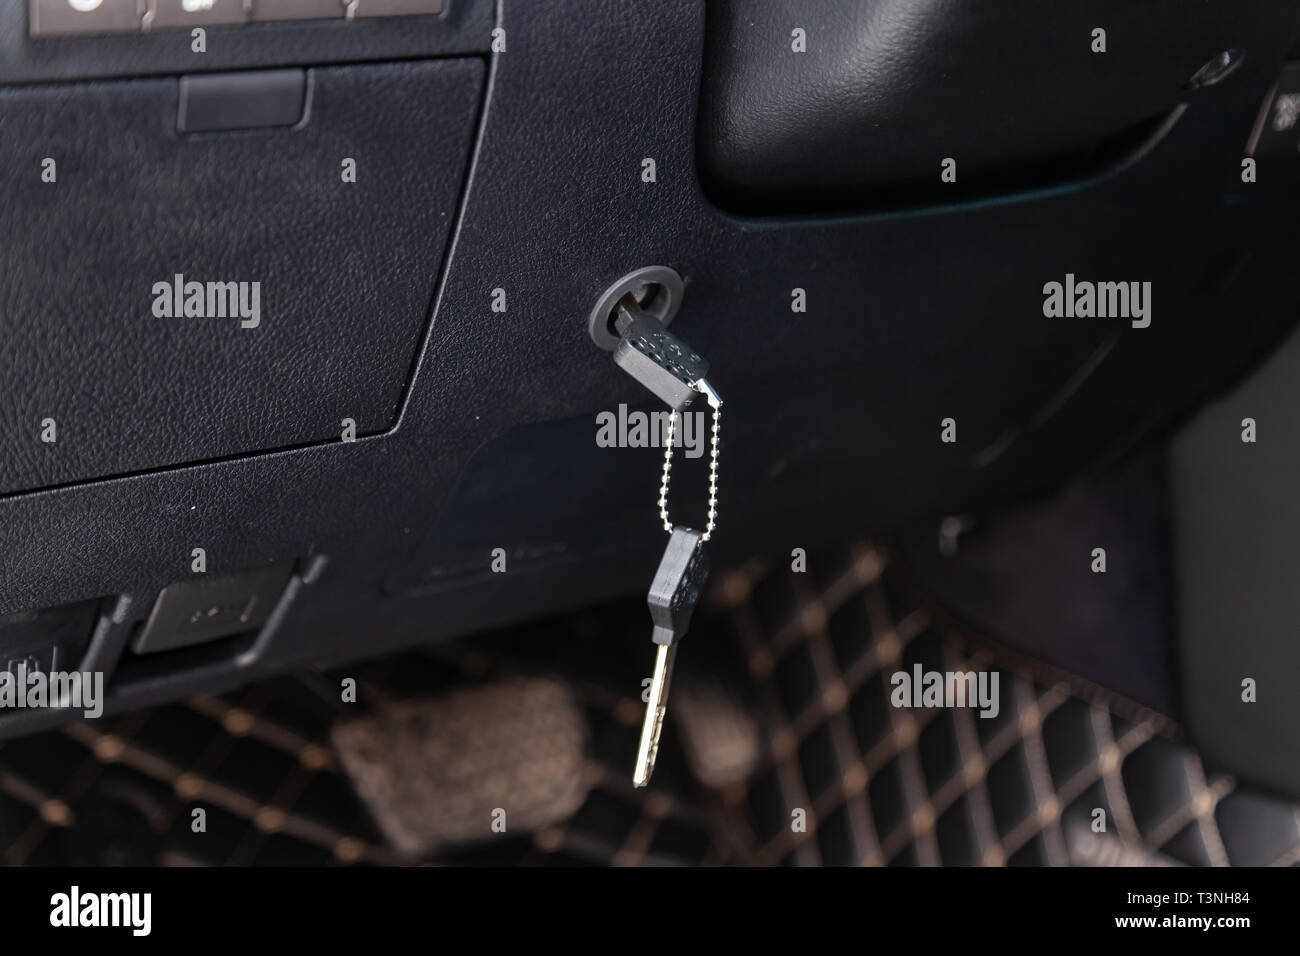 Moderne Diebstahlsicherung Werkzeug für das Auto in der Form der  Lenksäulenverriegelung, die mit einer Taste gesperrt ist und auf der  Unterseite der Innenverkleidung installiert. Fahrzeug Stockfotografie -  Alamy